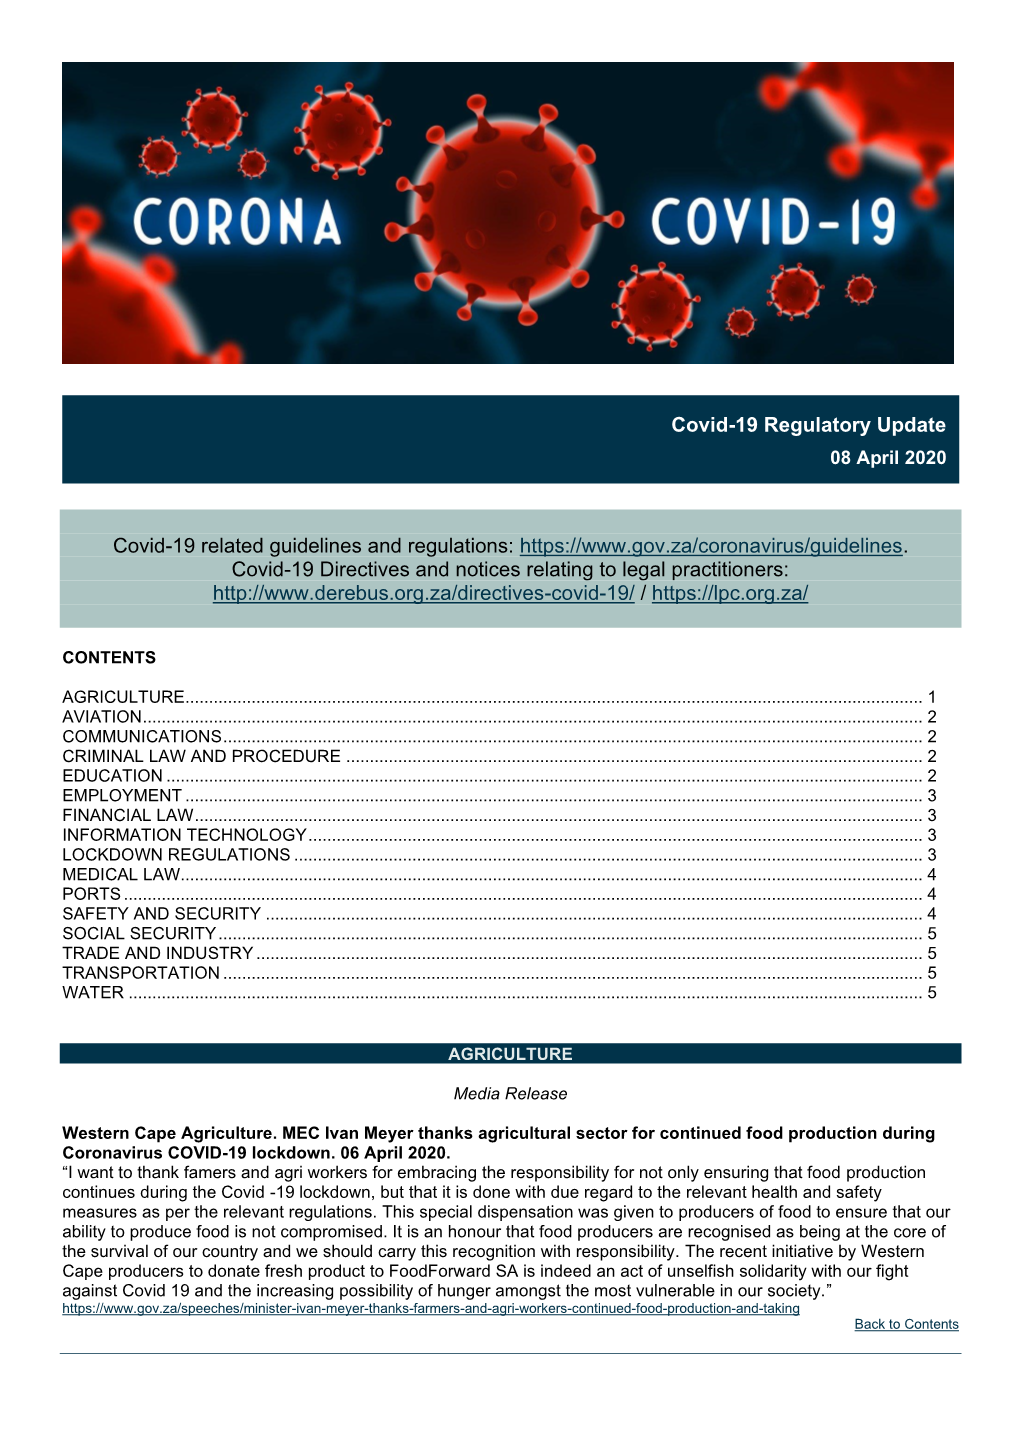 Covid-19 Regulatory Update 08Apr2020